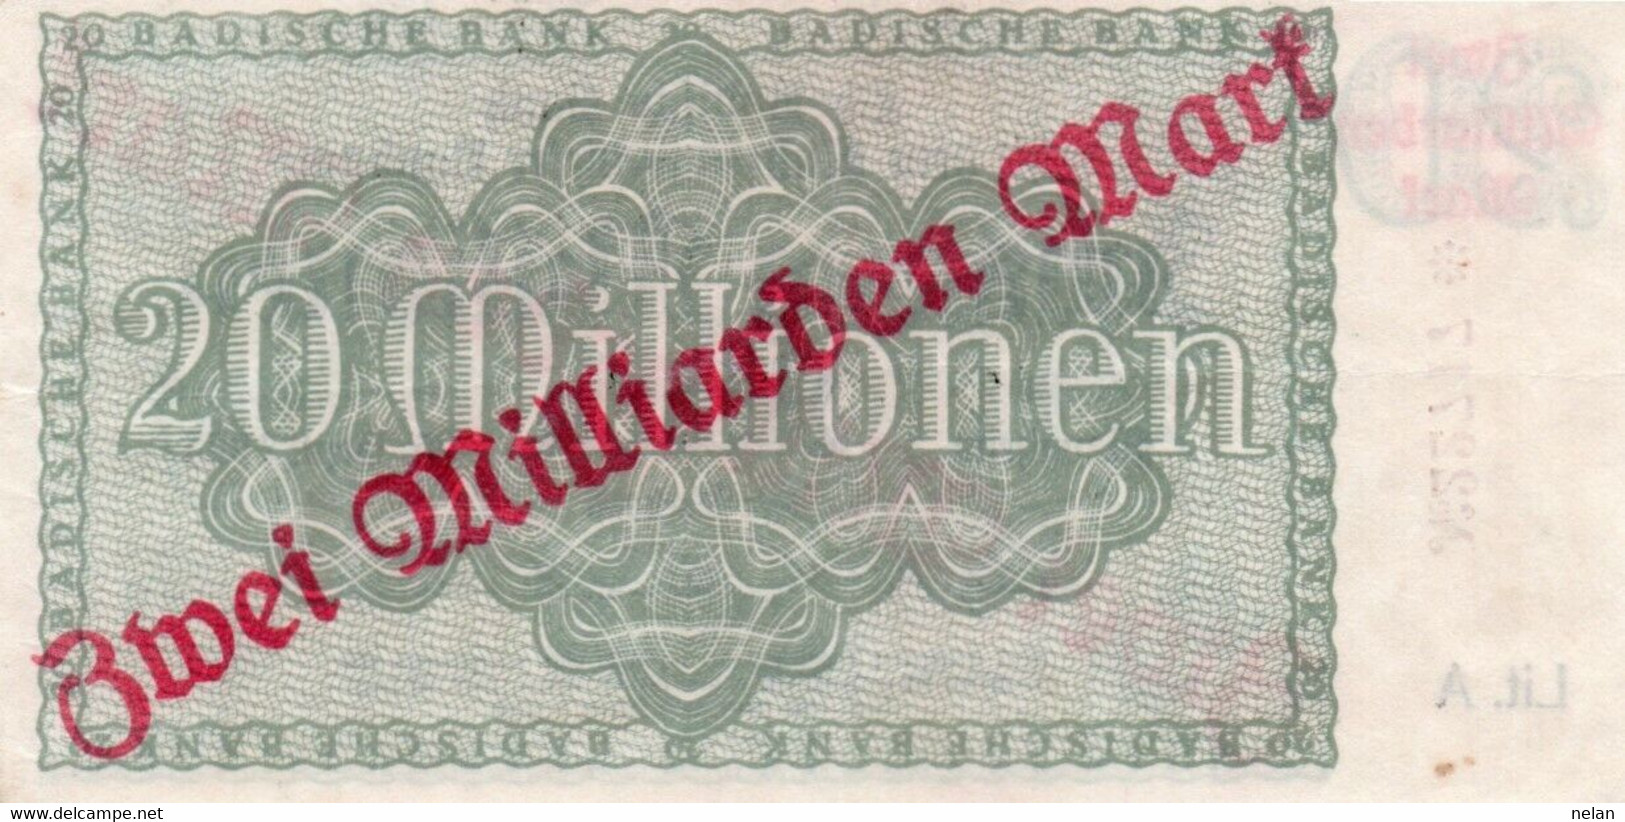 GERMANIA 2 MILLIARDEN MARK 1923 - Kel:3428d. - BADISCHE BANC - XF - [13] Bundeskassenschein